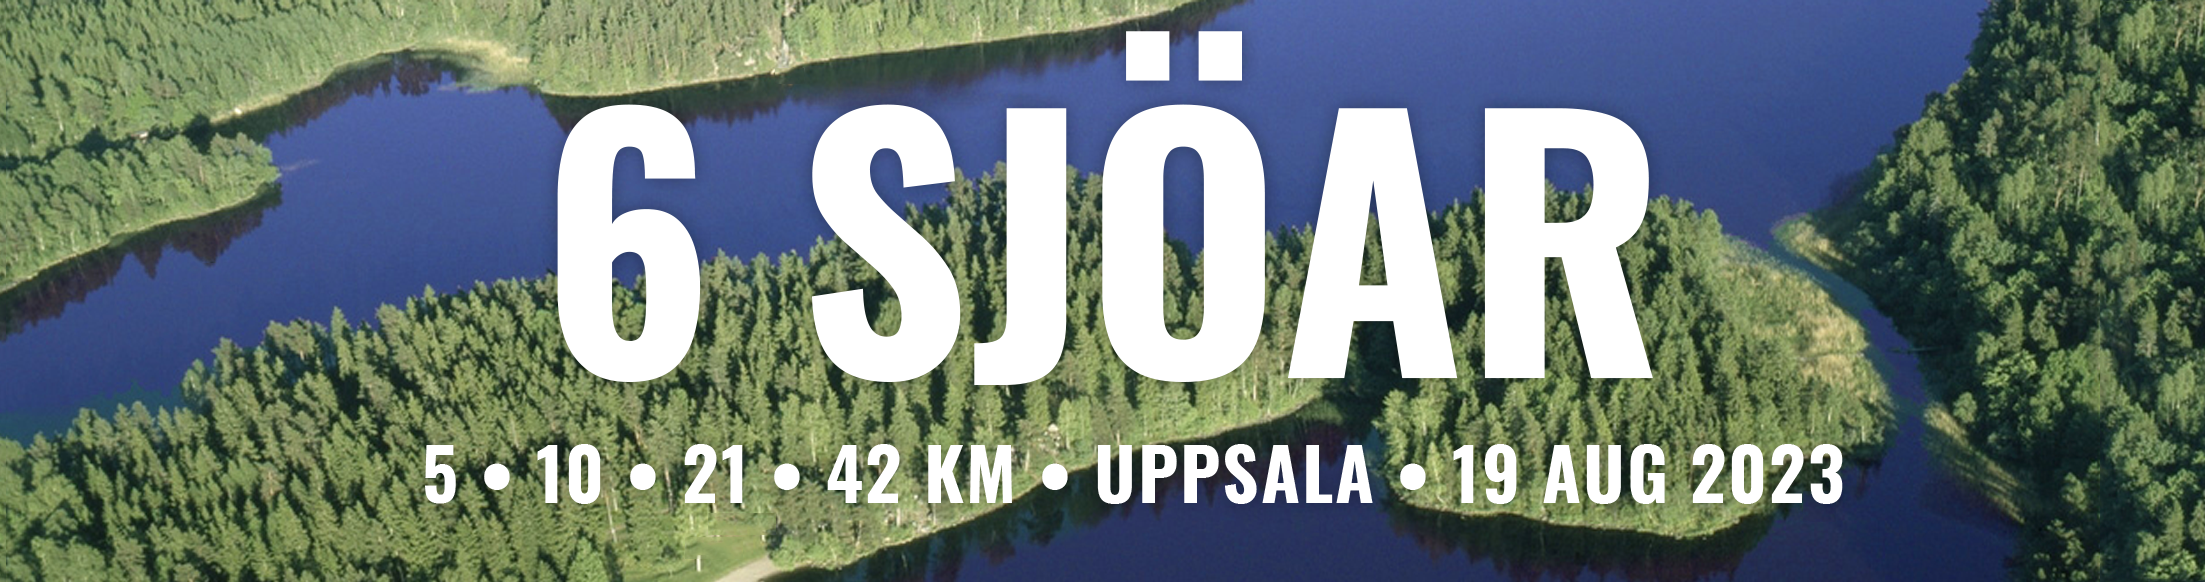 6 sjöar marathon och halvmarathon Uppsala, Sverige